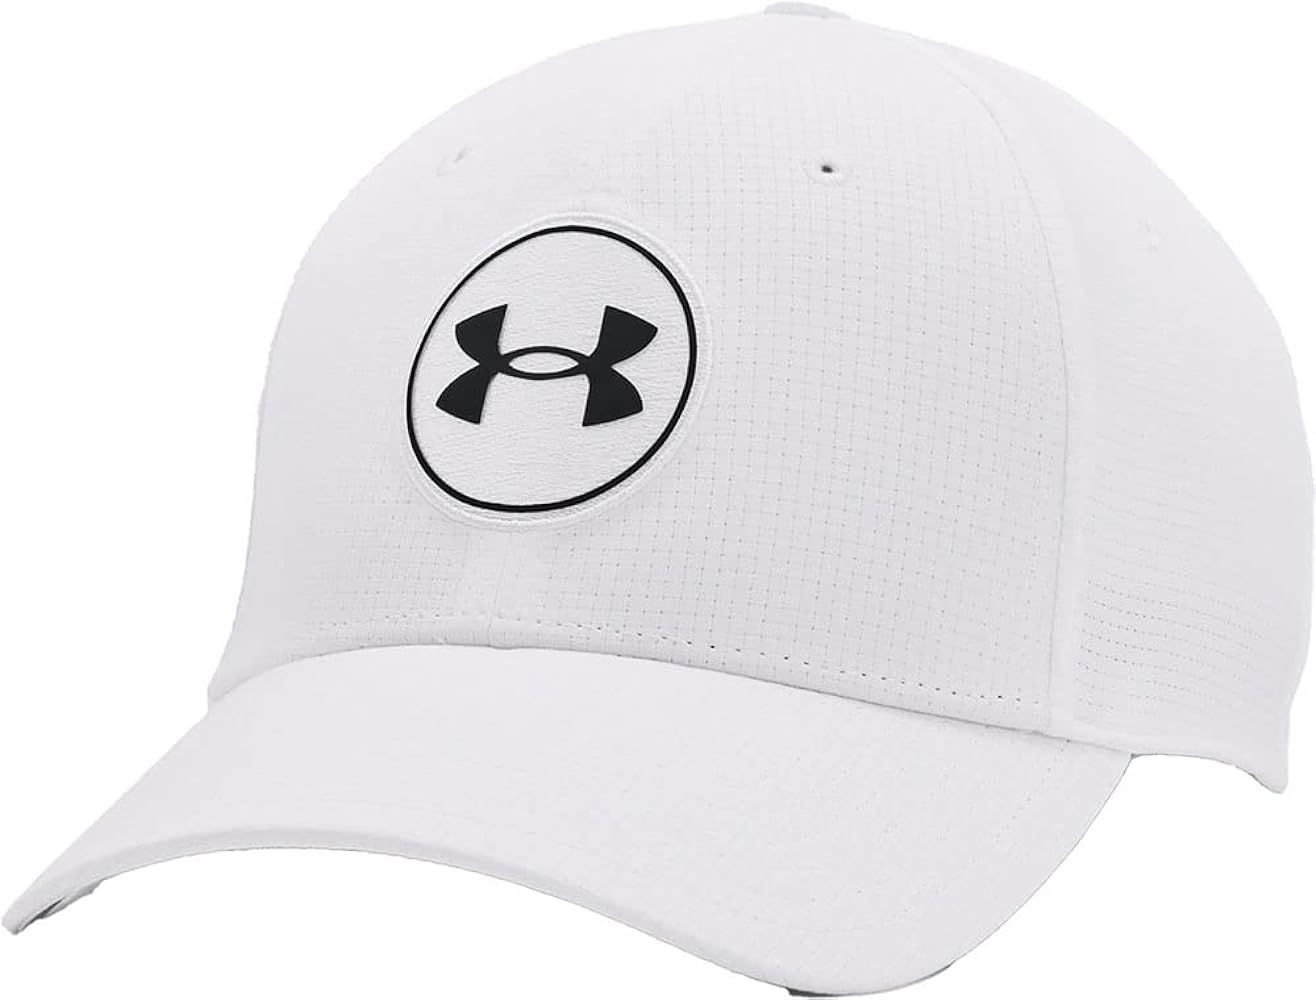 Under Armour - Unisex Golf Flexfit Hat, Color White (100), Size: Medium/Large | Amazon (US)